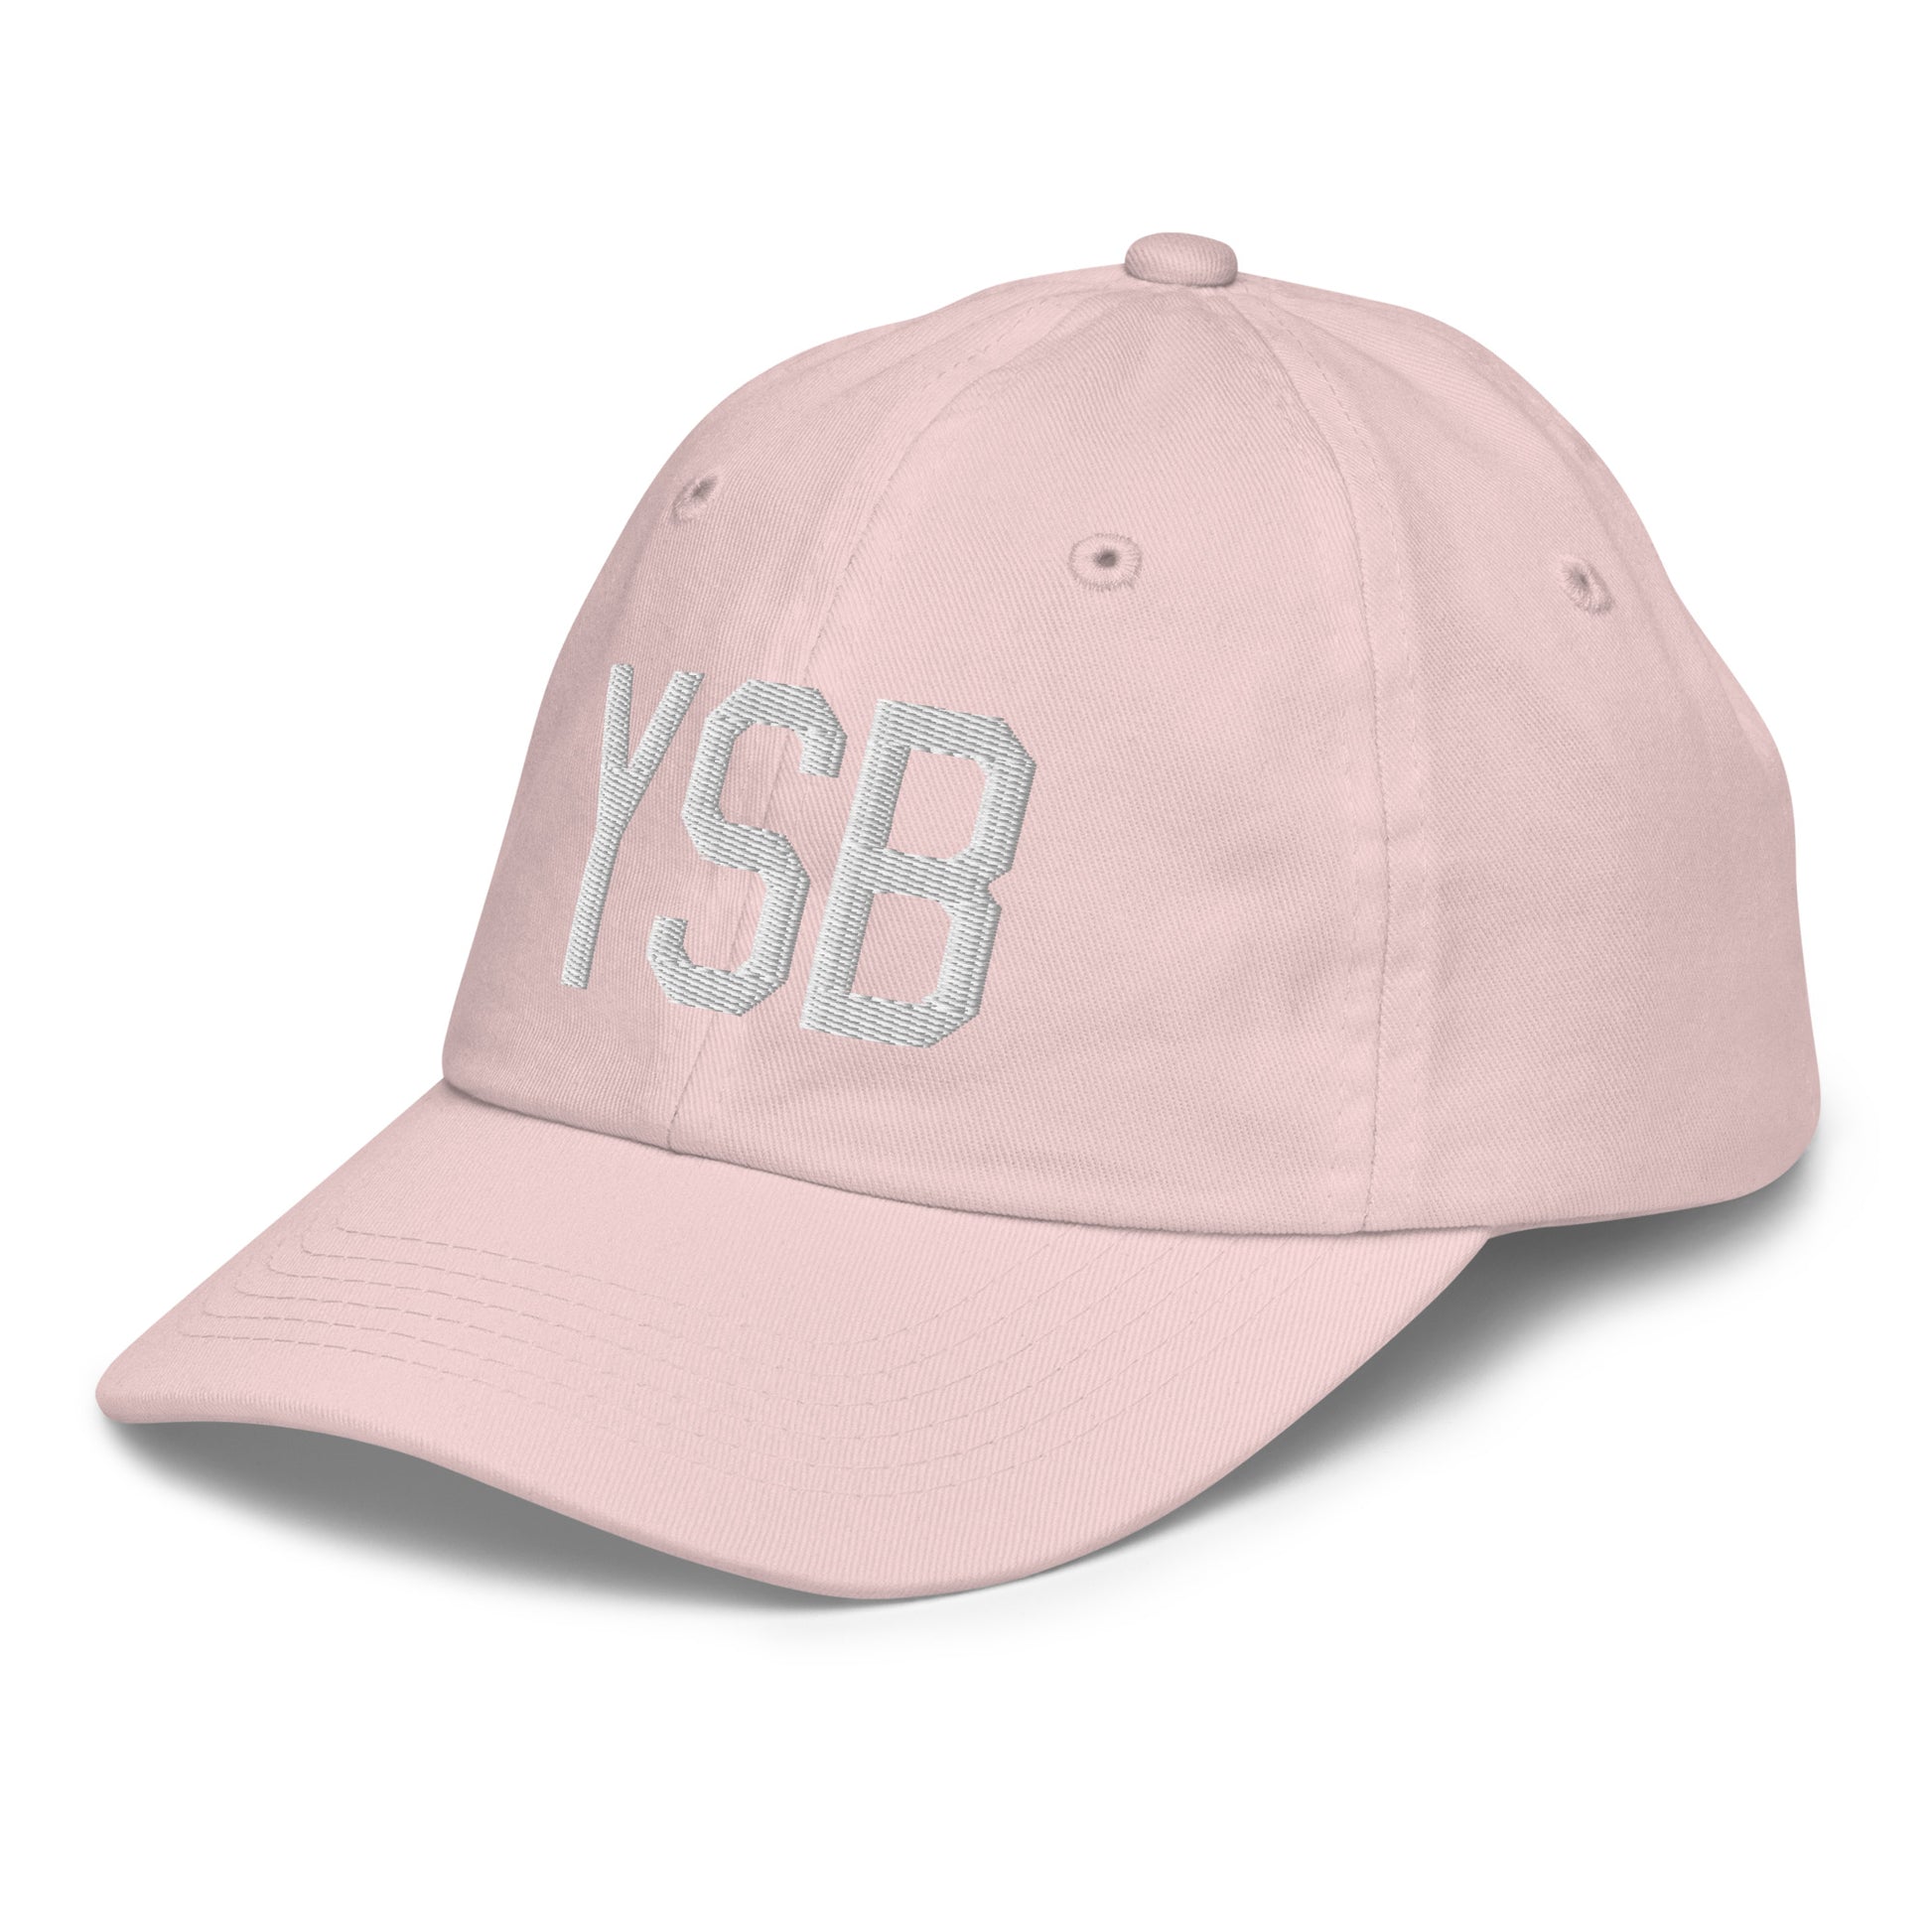 Airport Code Kid's Baseball Cap - White • YSB Sudbury • YHM Designs - Image 33